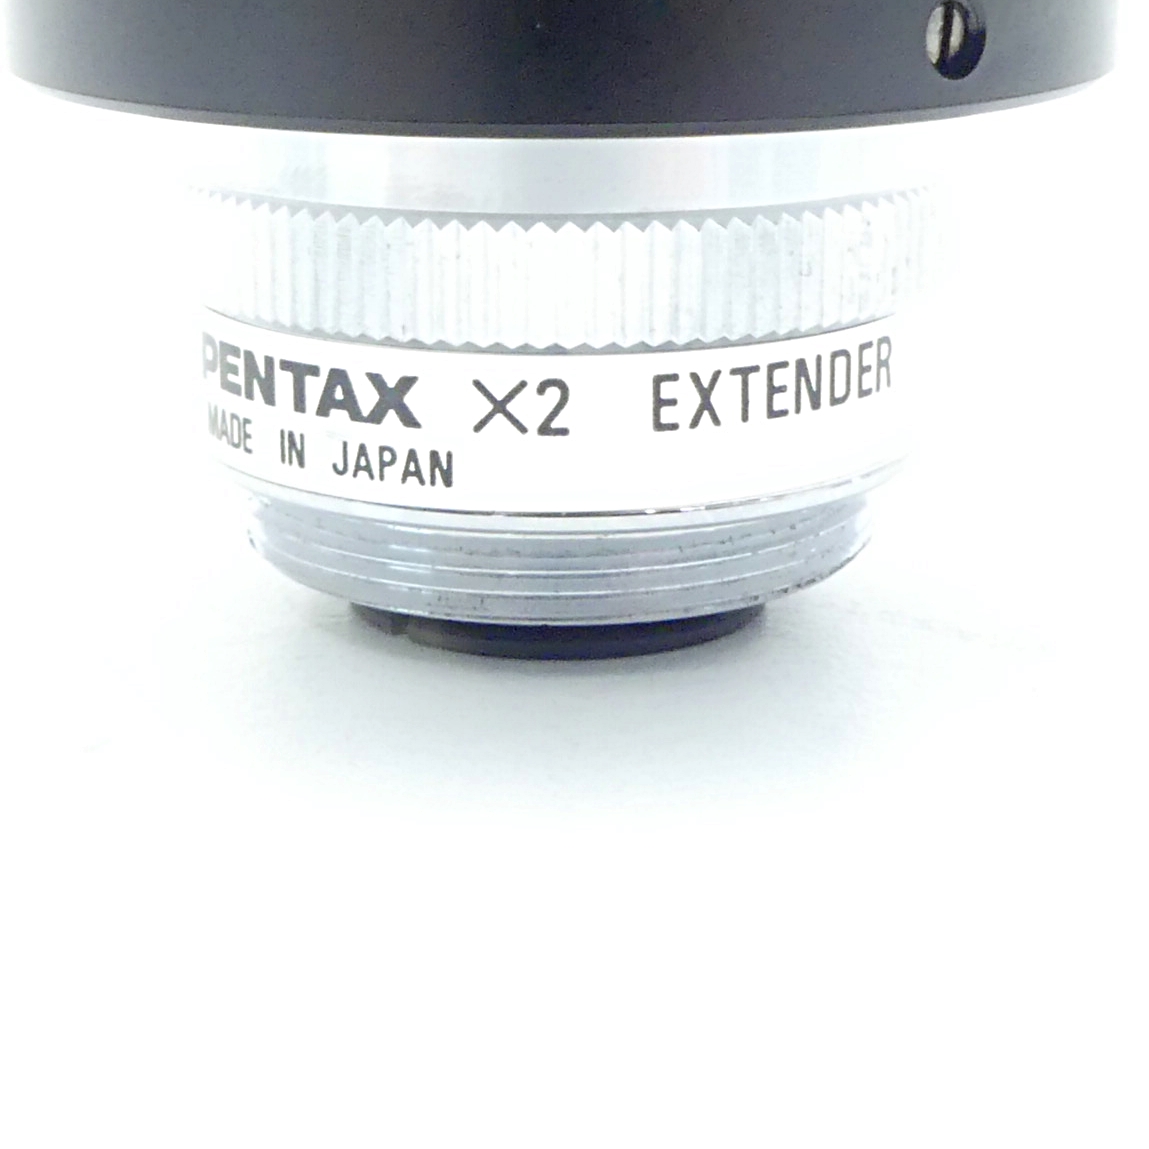 Pentax X2 Extender 